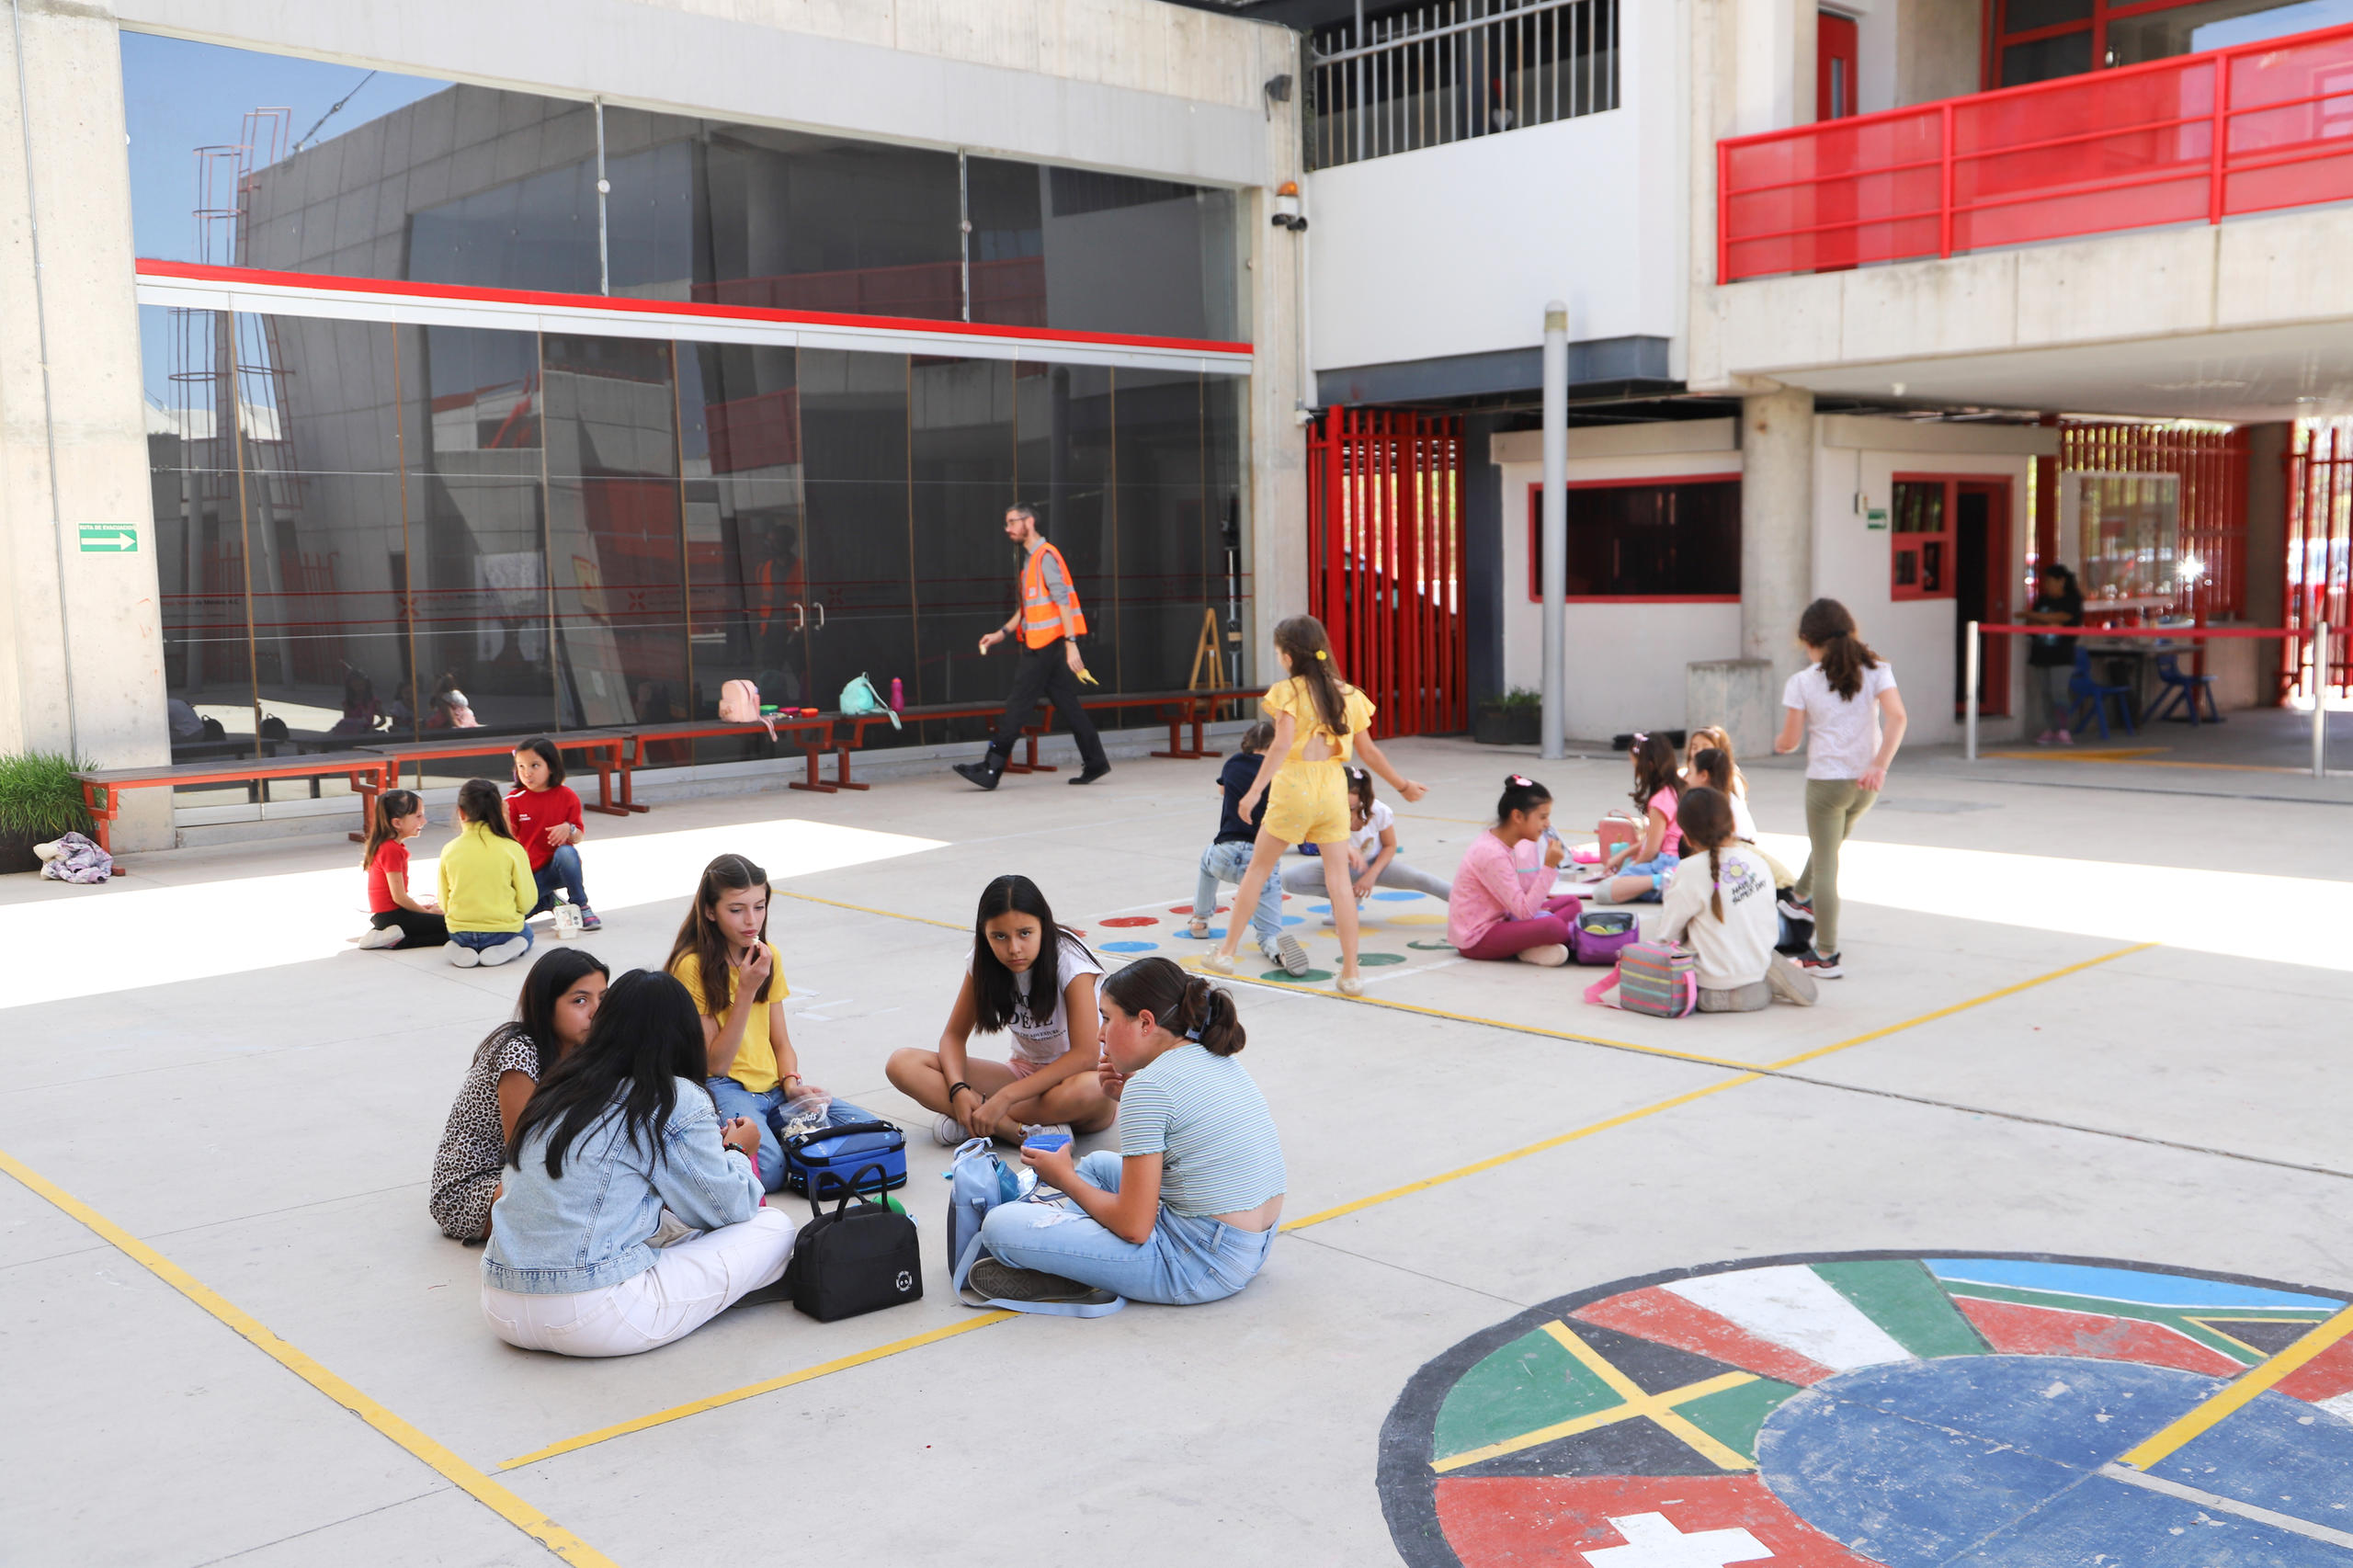 Spielende Kinder an der Schweizerschule in Mexiko.